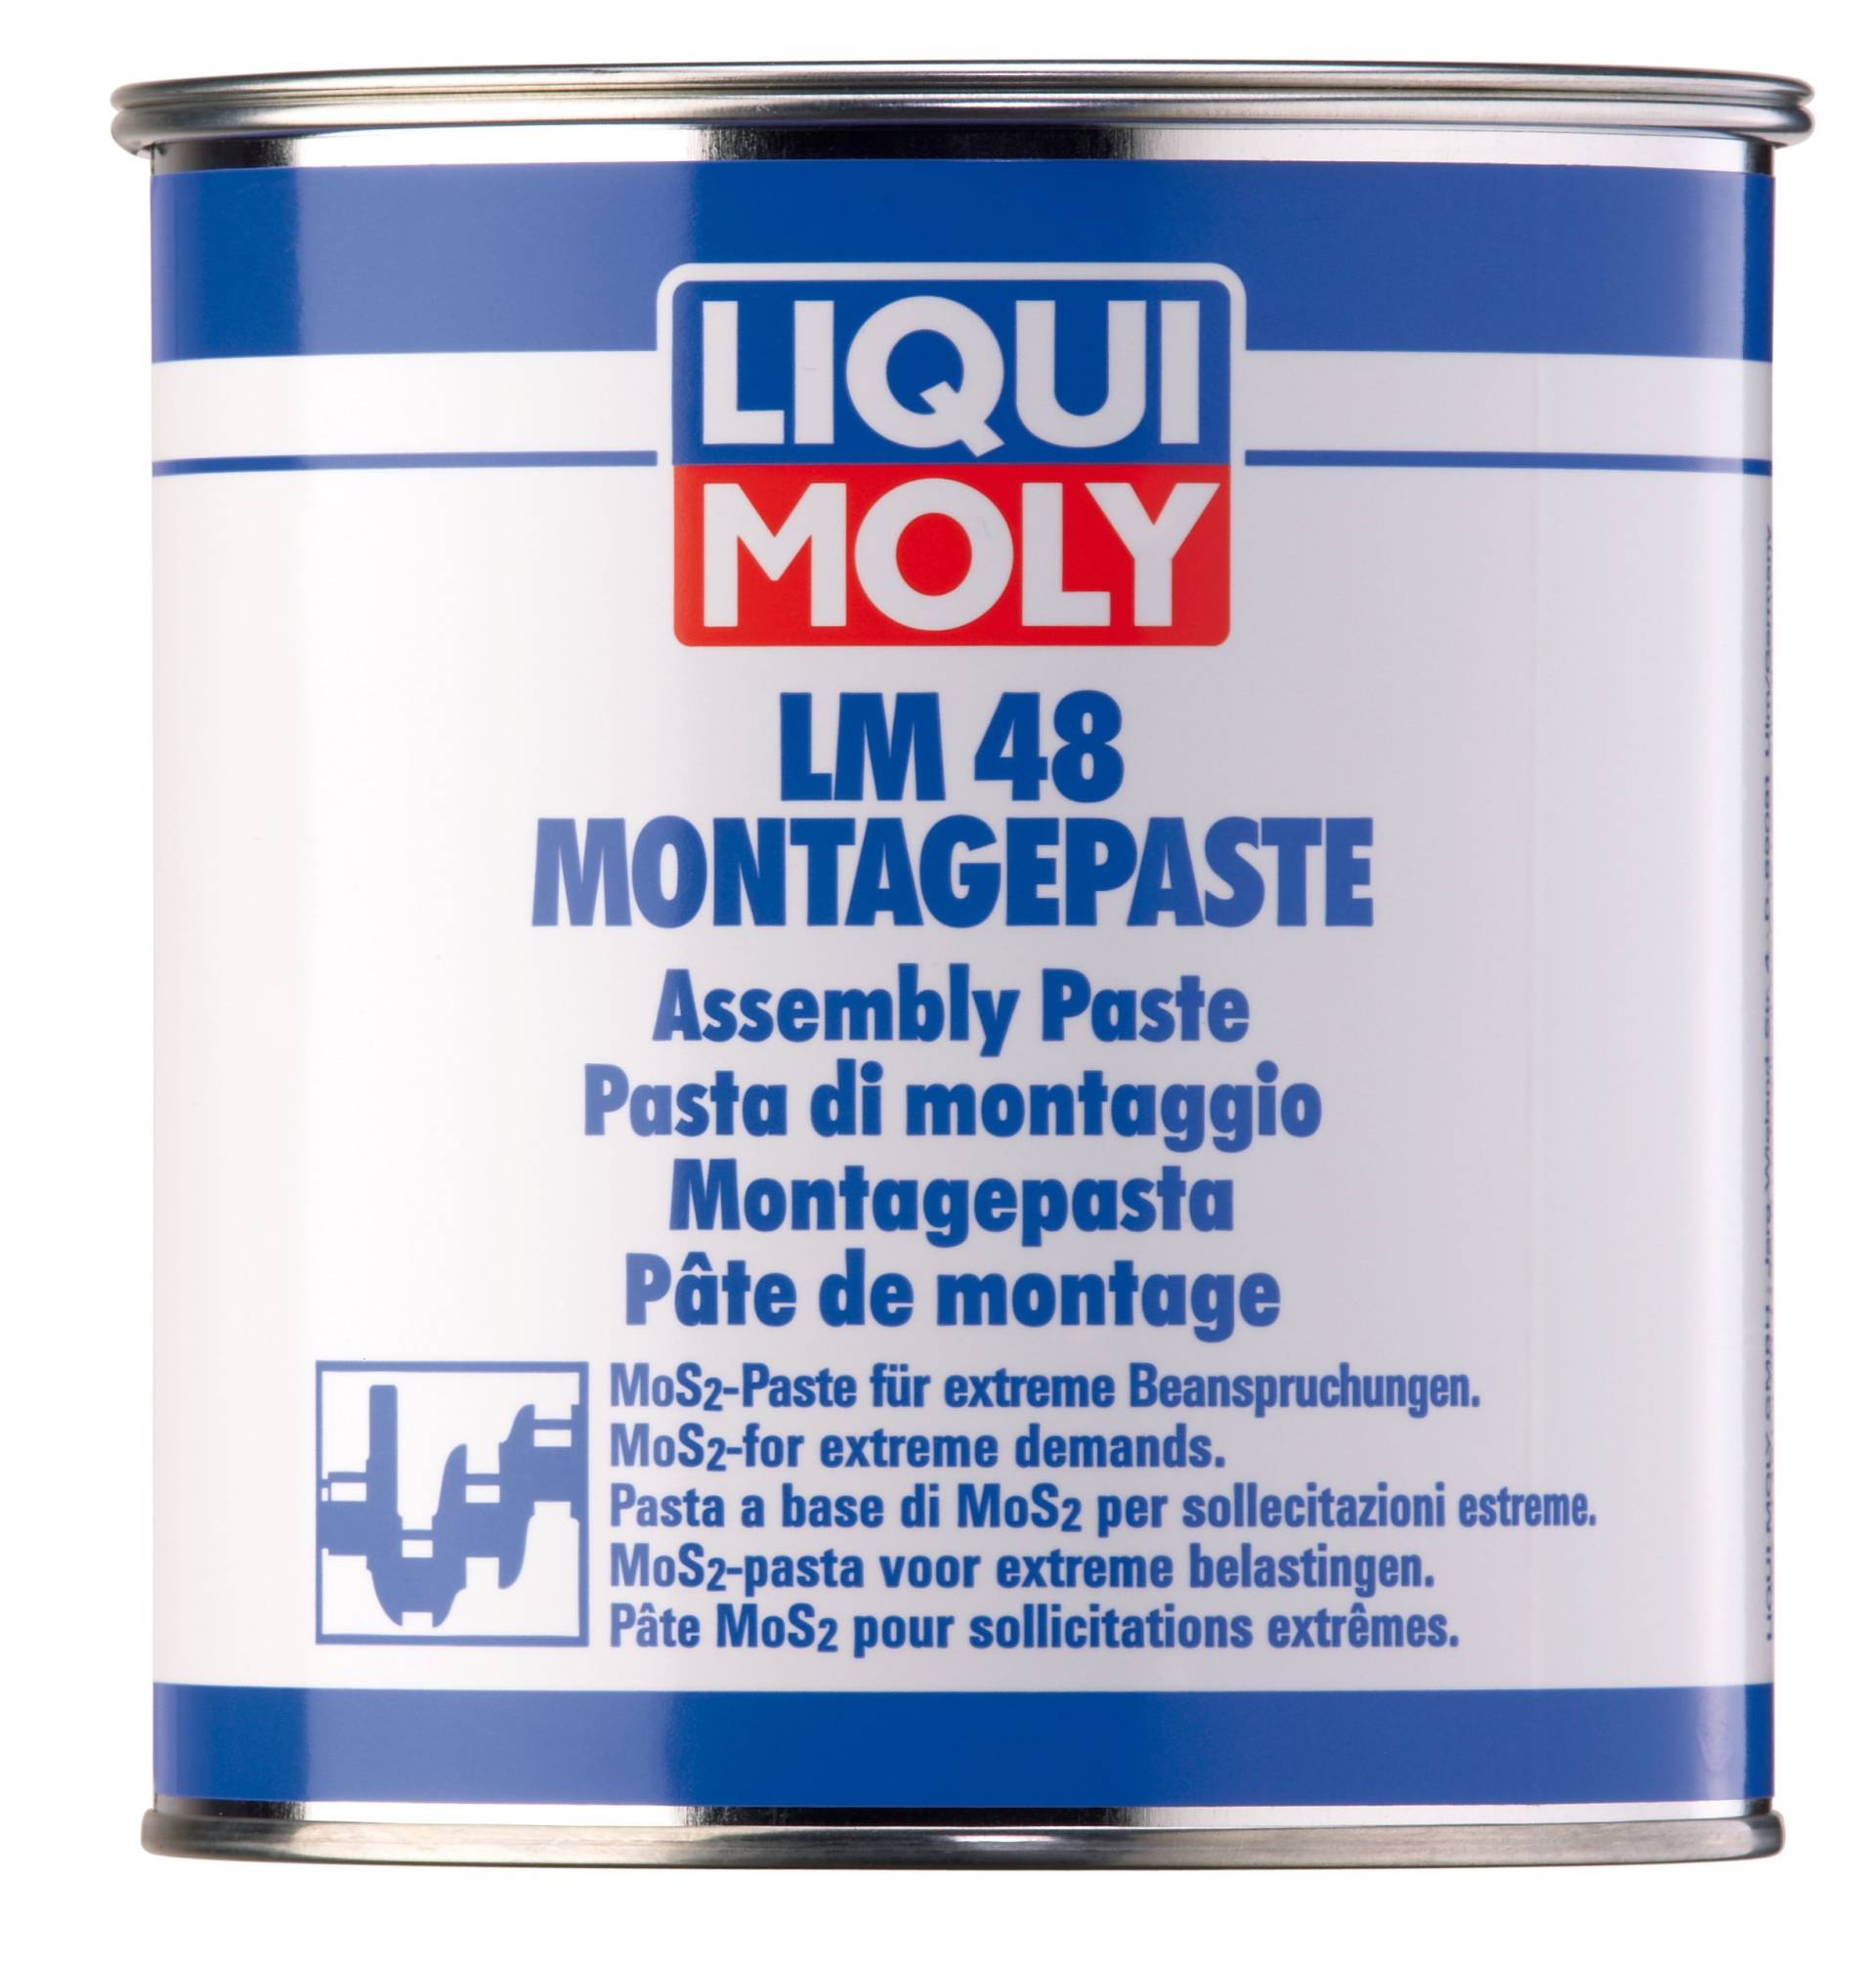 LIQUI MOLY LM 48 Montagepaste | 1 kg | Paste | Art.-Nr.: 4096 von Liqui Moly